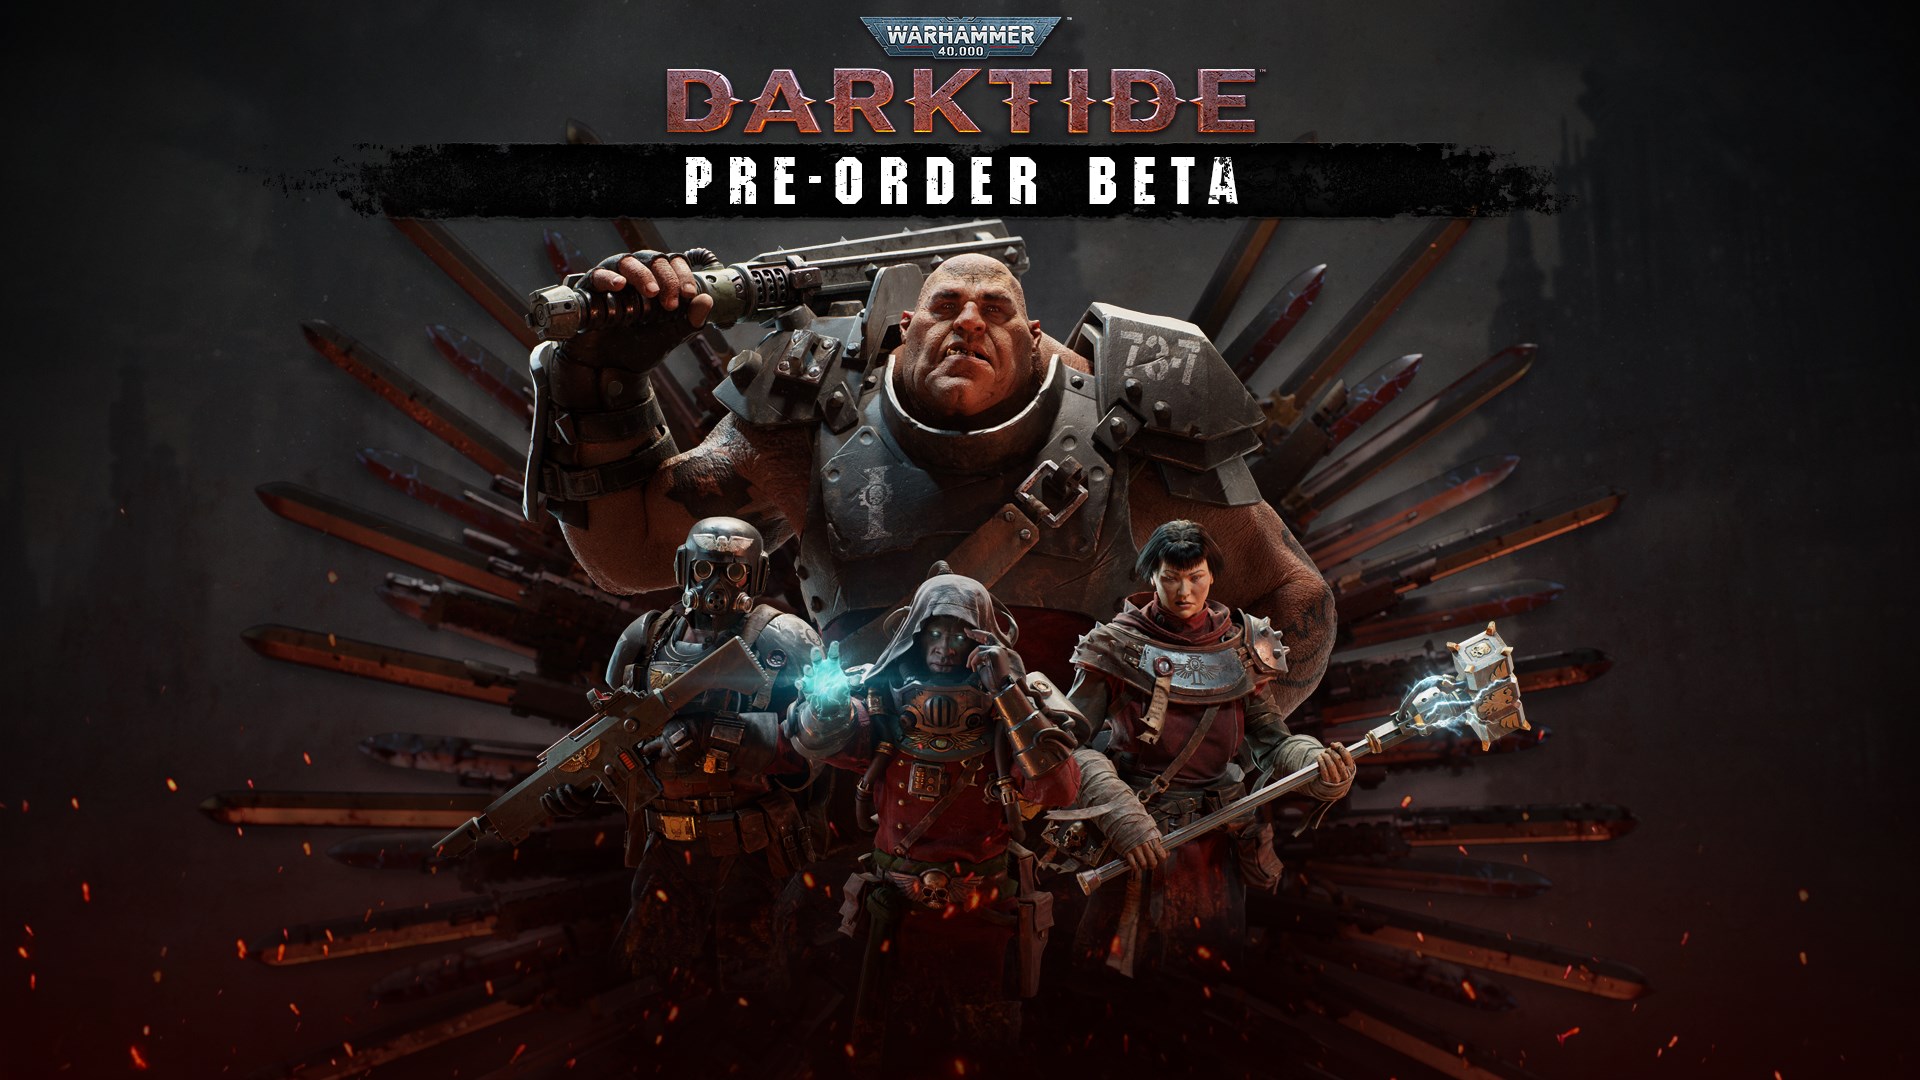 Warhammer 40,000: Darktide Pre-Order Beta